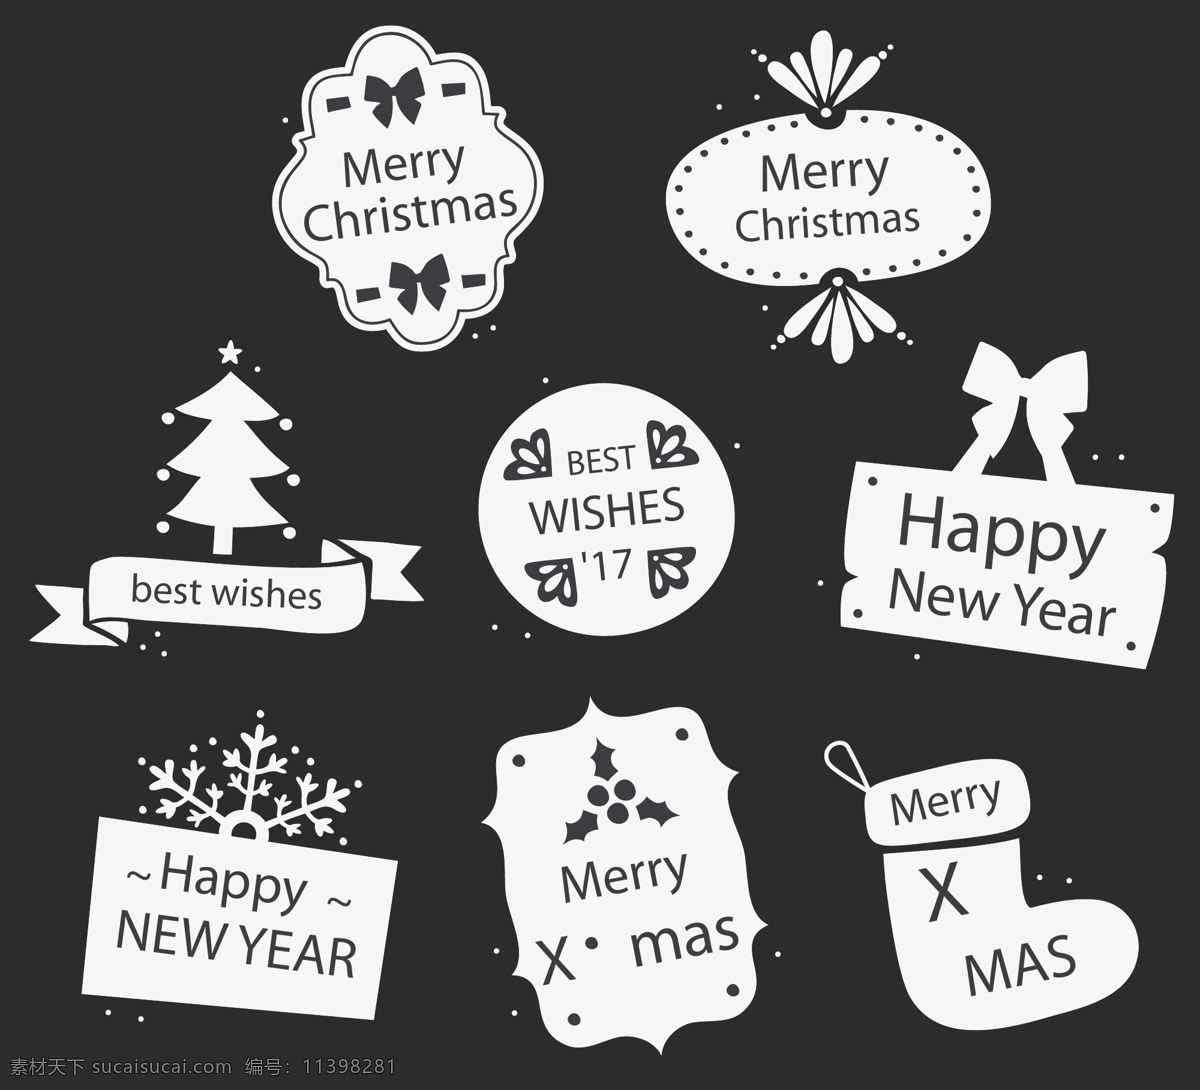 白色 圣诞节 英文 标签 蝴蝶结 雪花 矢量素材 圣诞树 圣诞袜 糖果